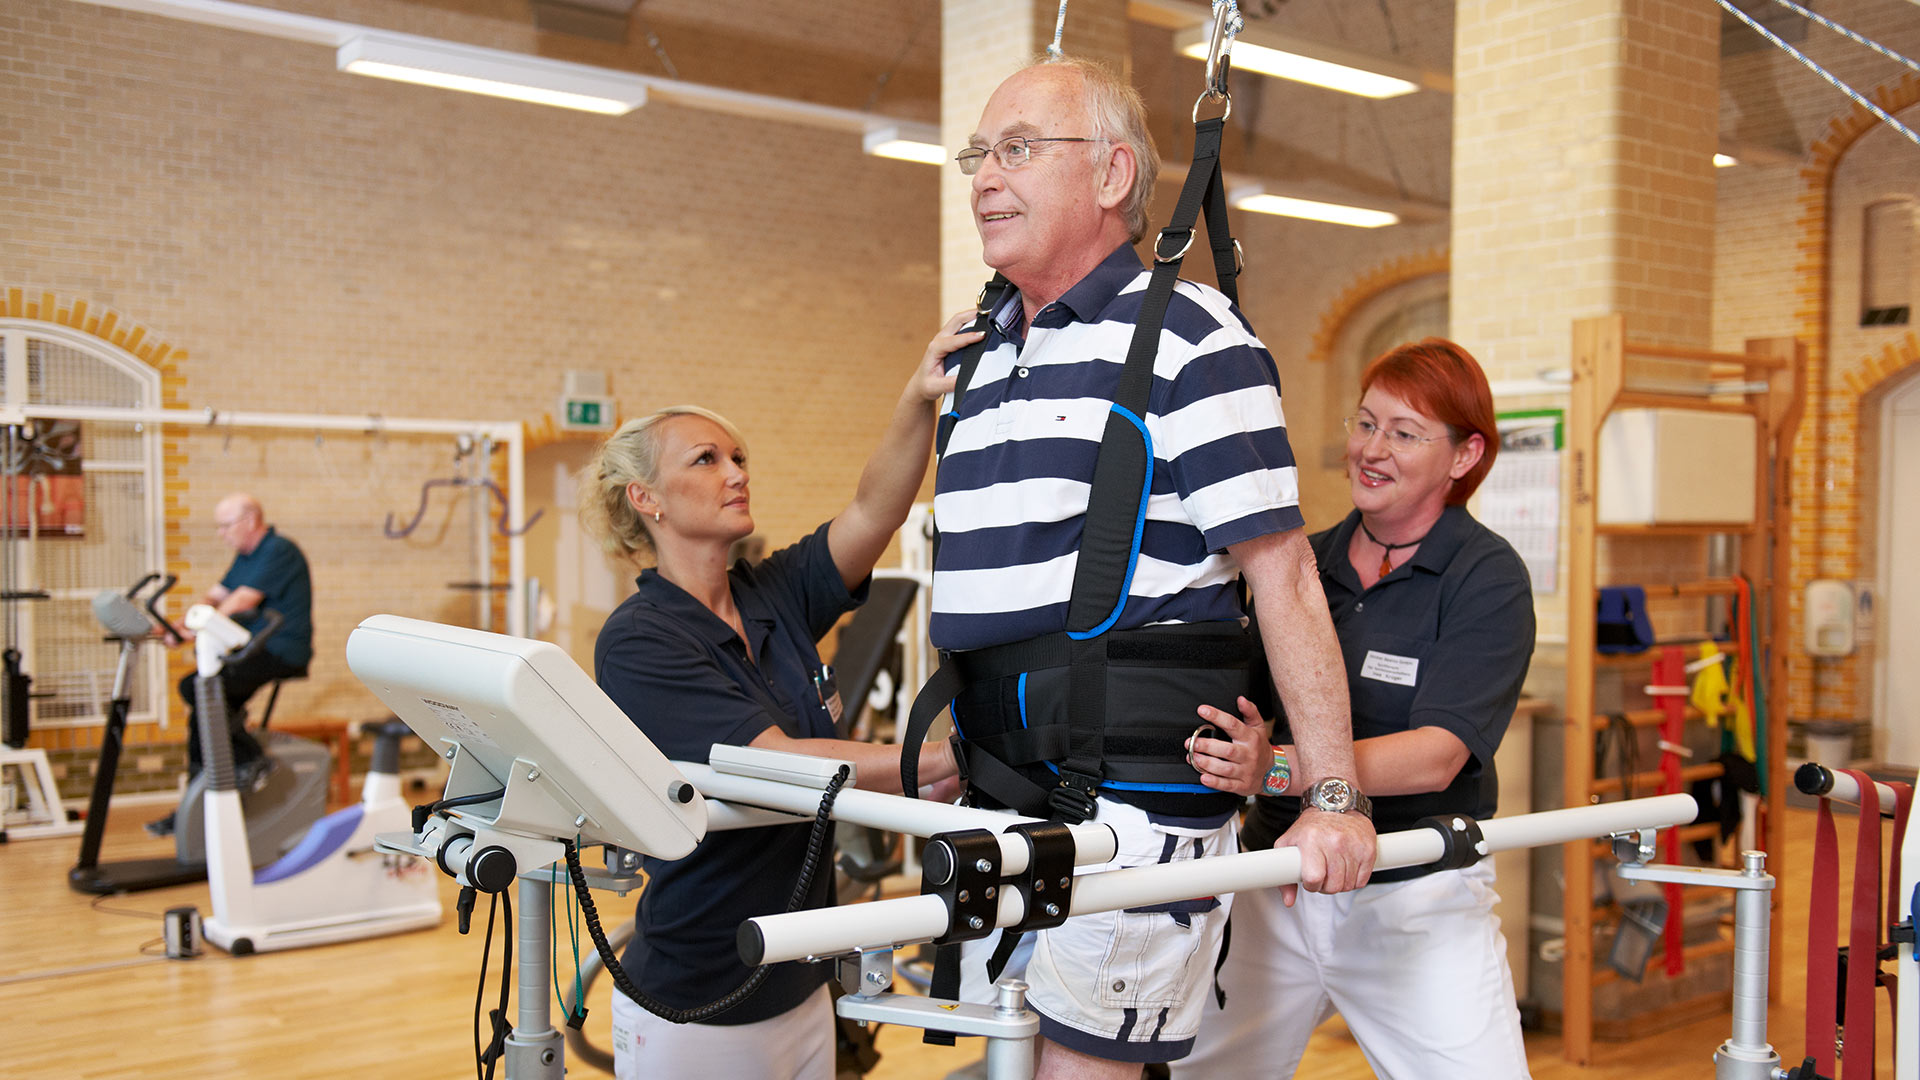 Nach einem Schlaganfall trainiert dieser Patient mit tatkräftiger Unterstützung auf dem Laufband.